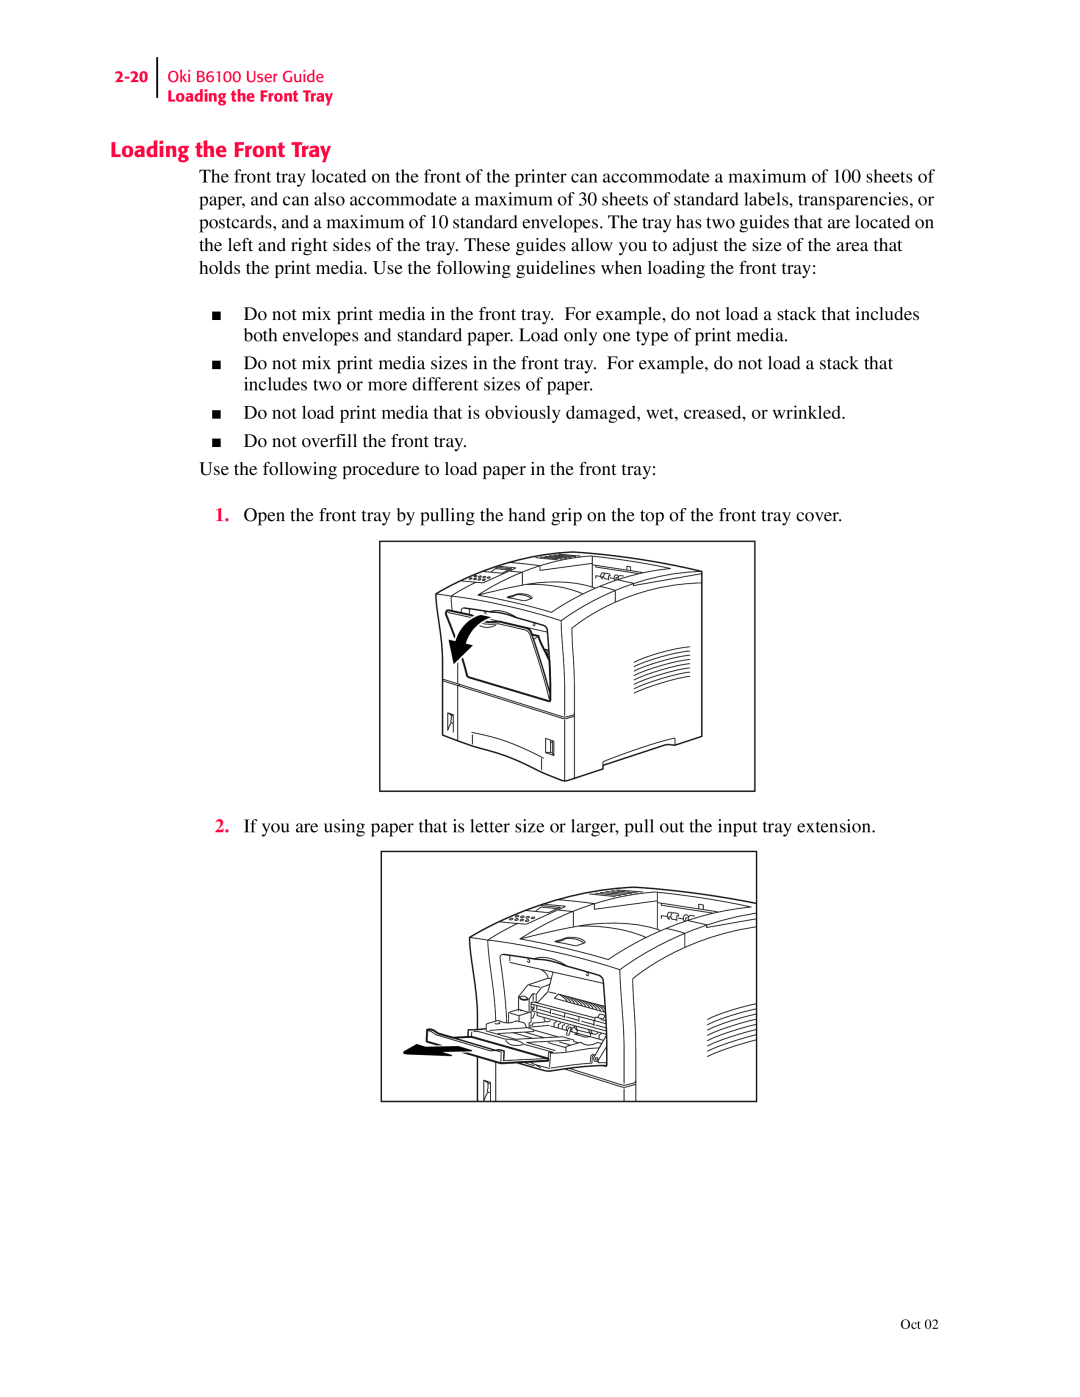 Oki 6100 manual Loading the Front Tray 